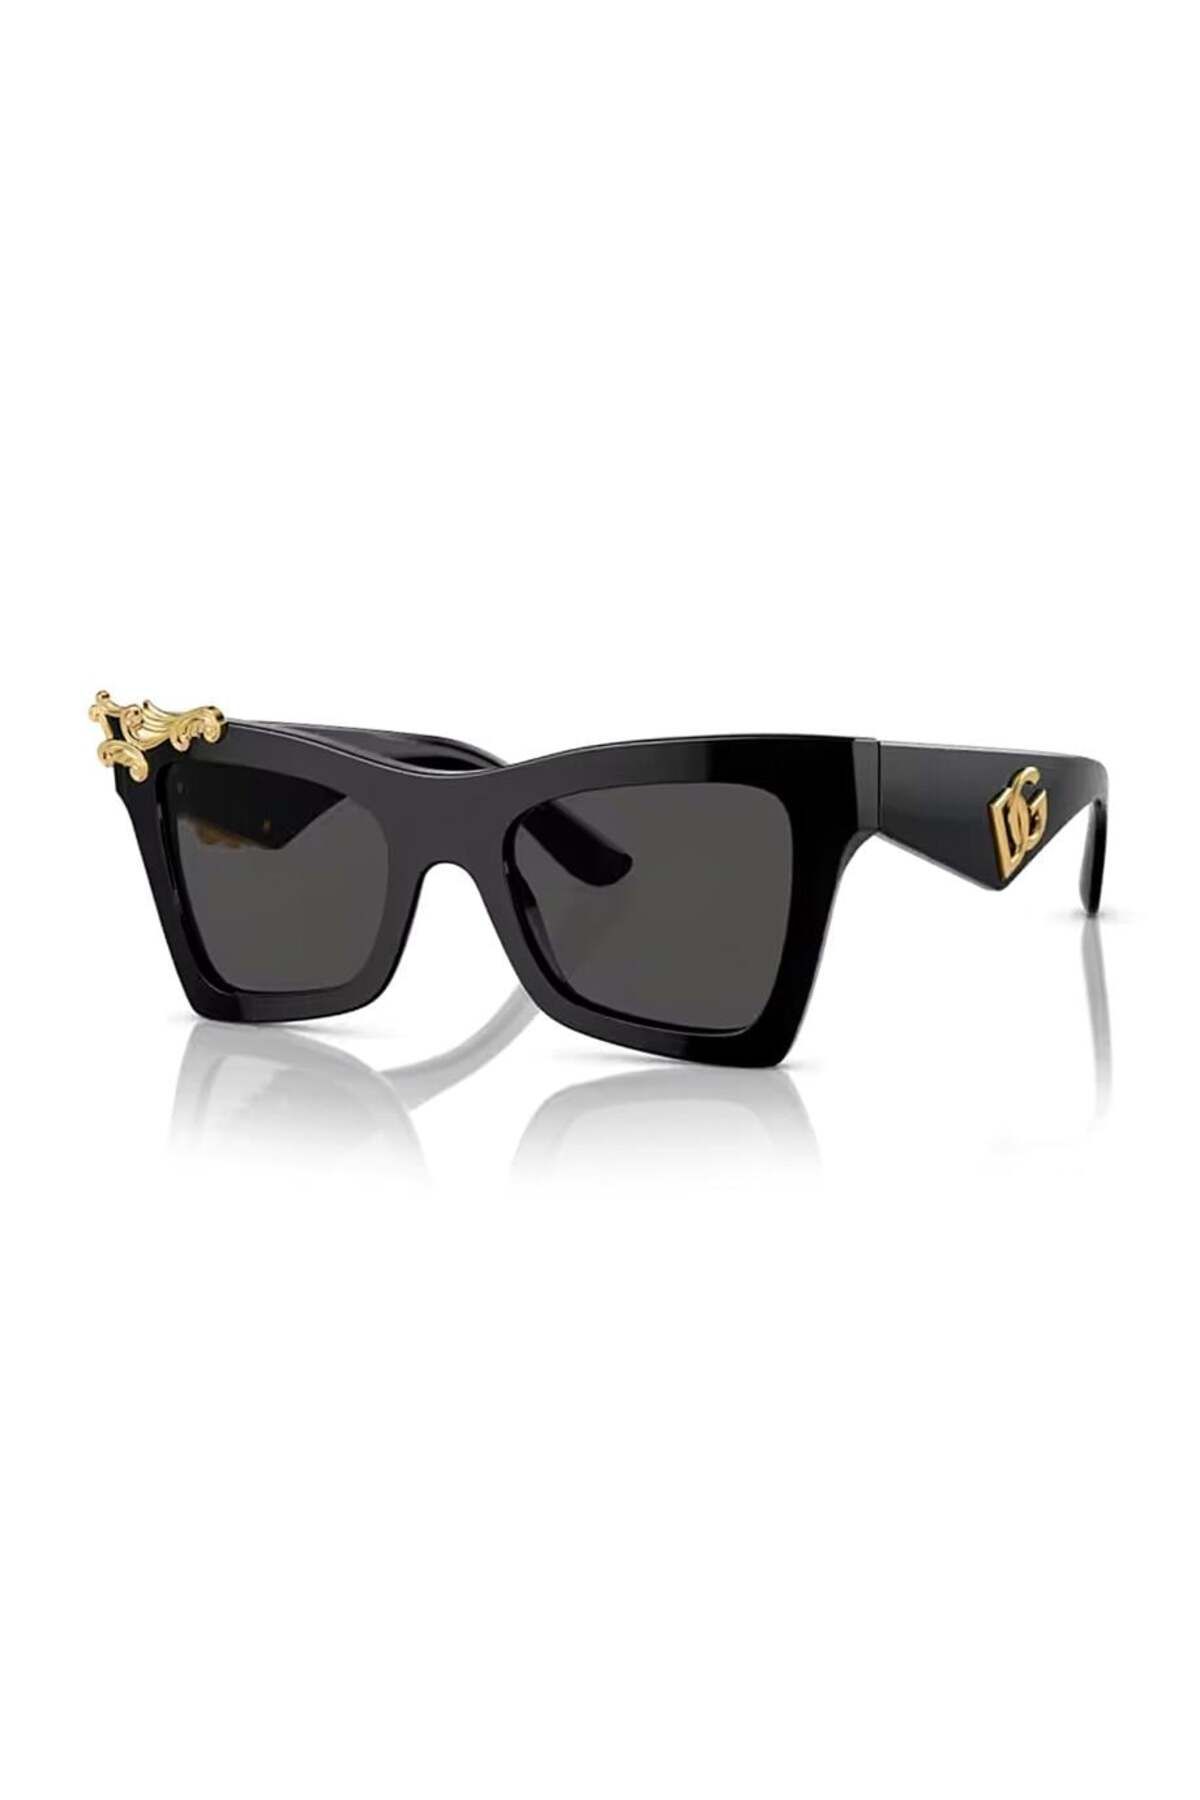 Dolce&Gabbana Dolce Gabbana Dg 4434 50187 51 Kadın Siyah Cat Eye Güneş Gözlüğü